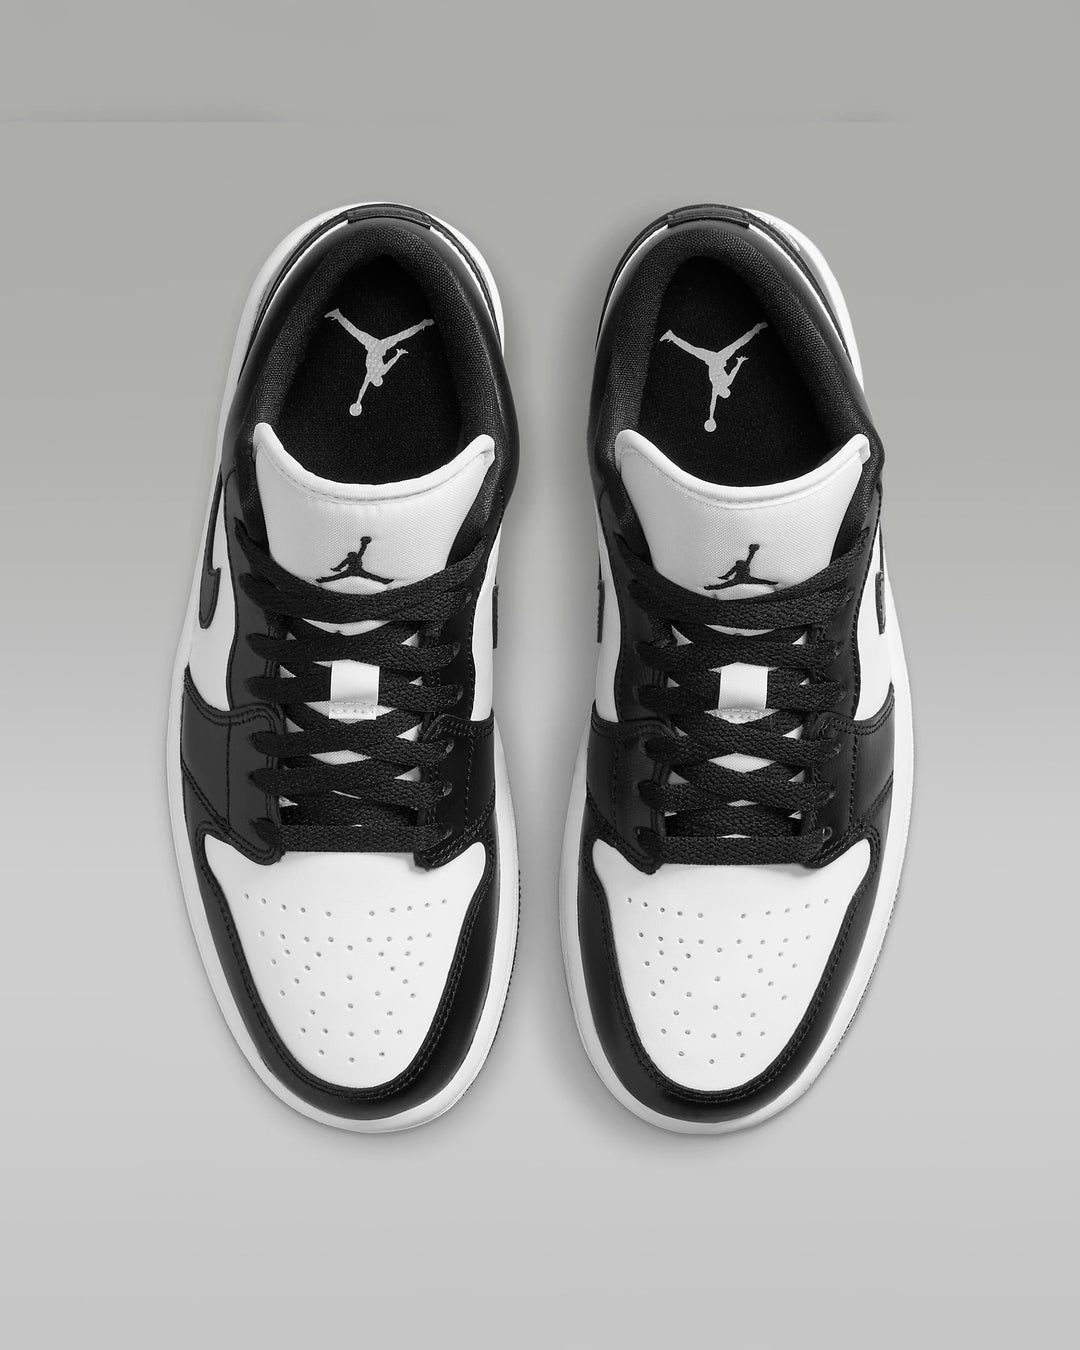 Giày Nike Air Jordan 1 Low Women Shoes #White Black - Kallos Vietnam